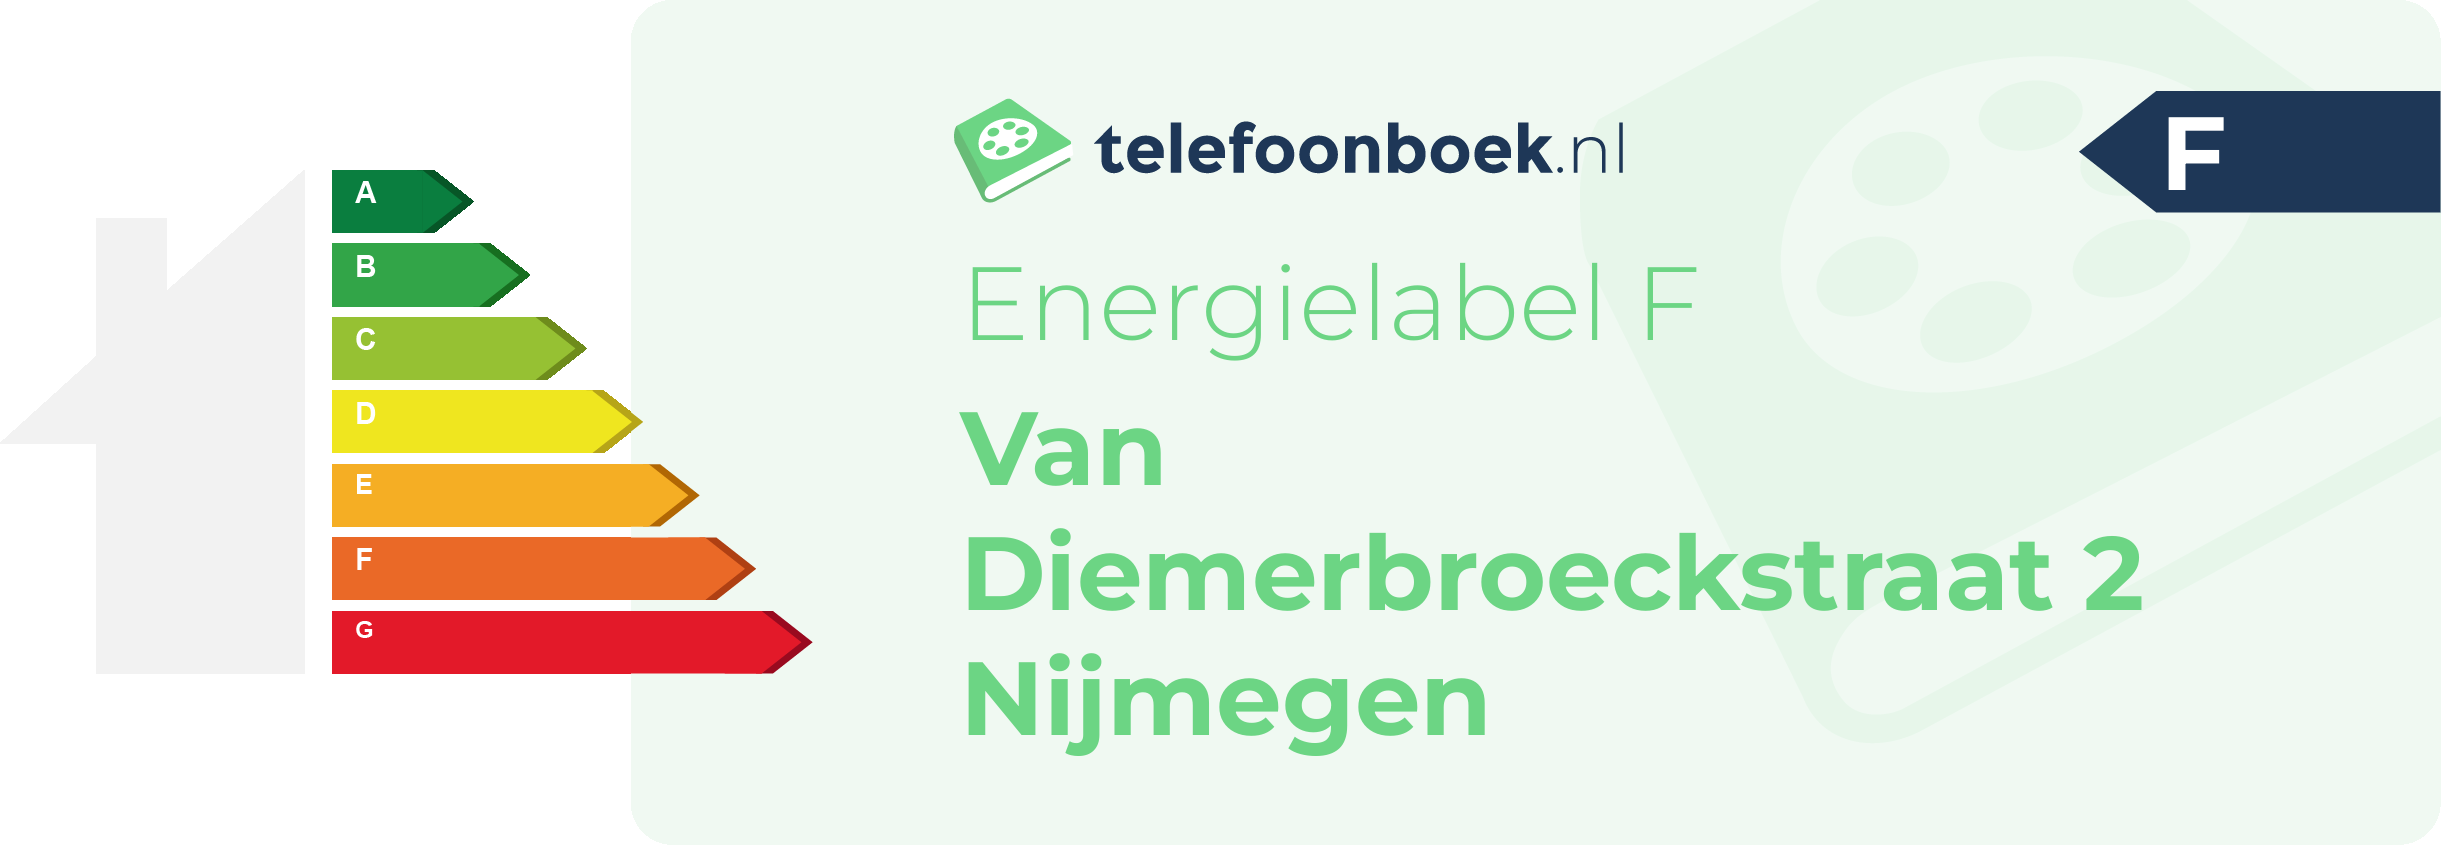 Energielabel Van Diemerbroeckstraat 2 Nijmegen